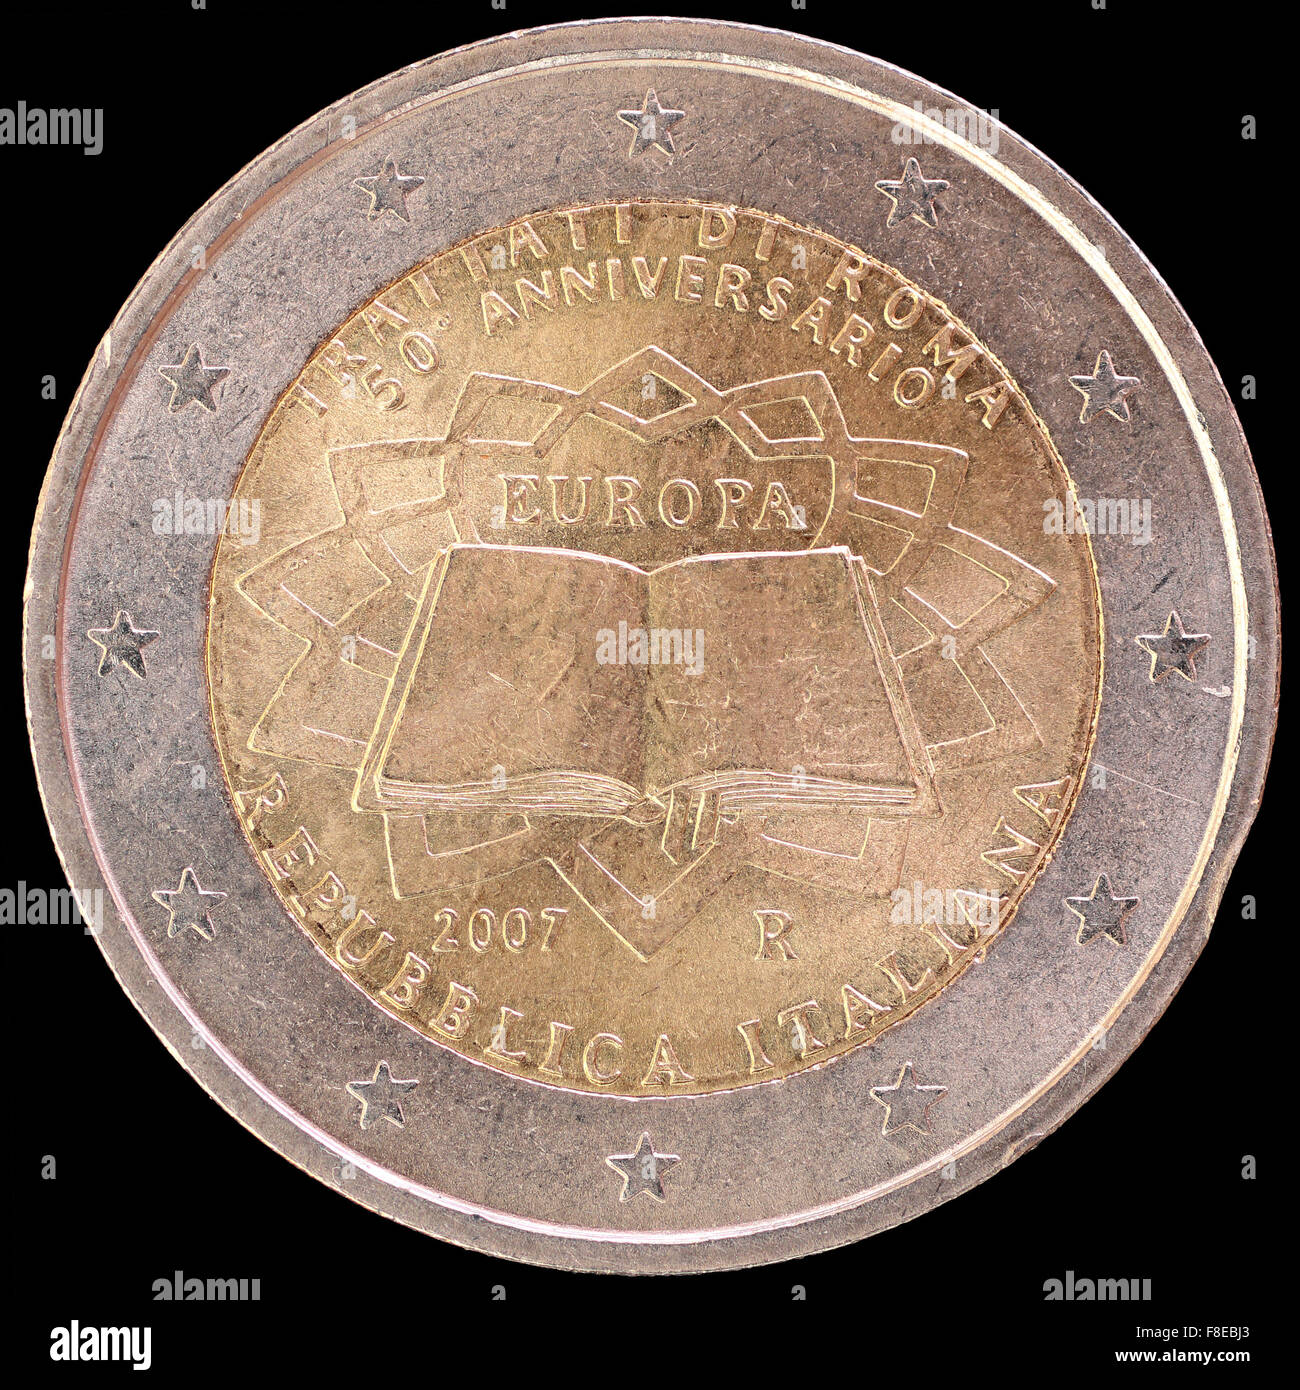 Eine Festschrift verteilt zwei-Euro-Münze von Italien in 2007 feiert den Jahrestag der Römischen Verträge ausgestellt. Bild-isolat Stockfoto